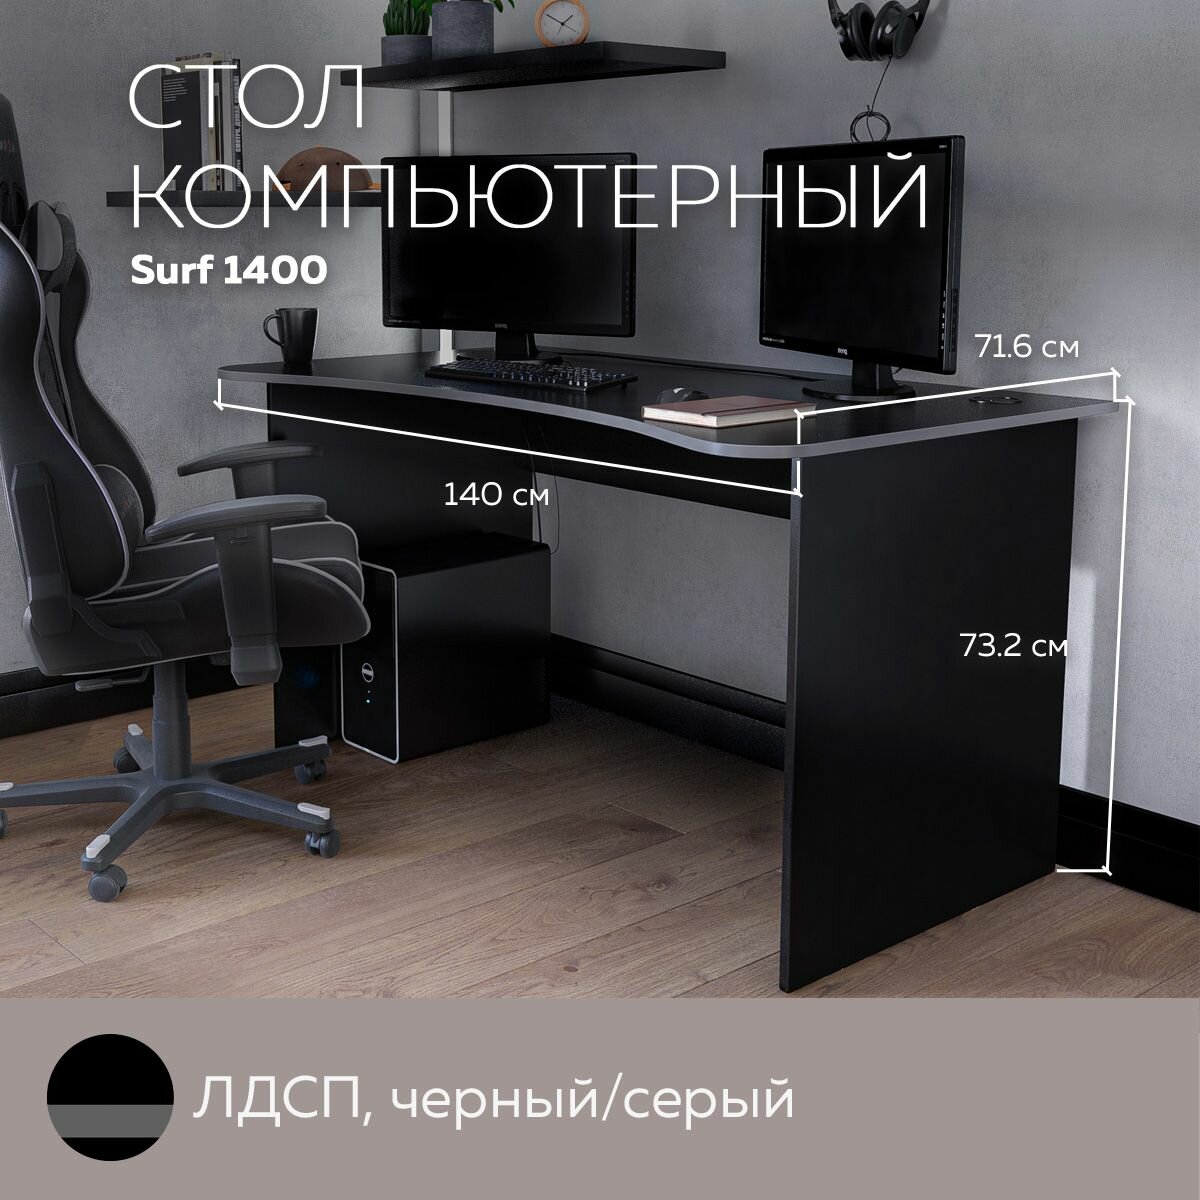 Геймерский компьютерный стол, письменный стол SURF 1400 Черный/Серый, 140*71,6 см.